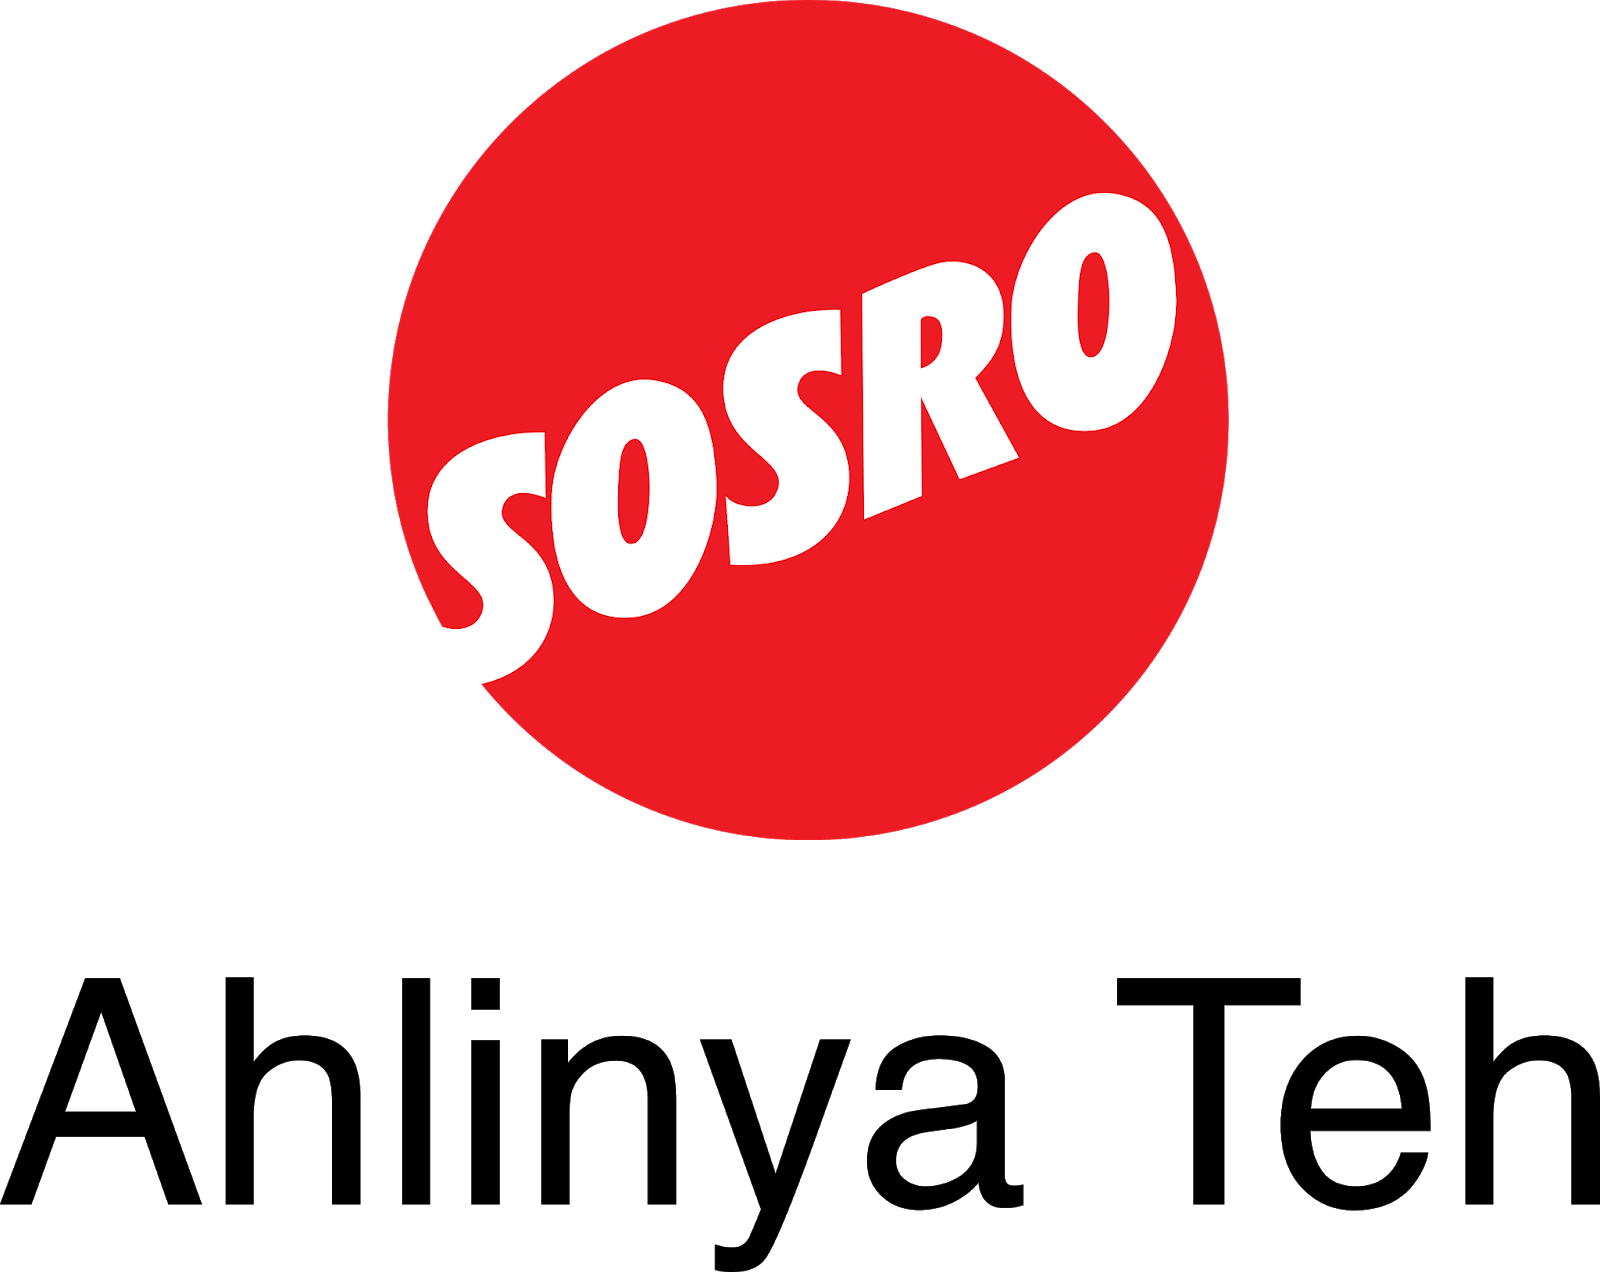  Logo  Logo  Produk Sosro  Agen87